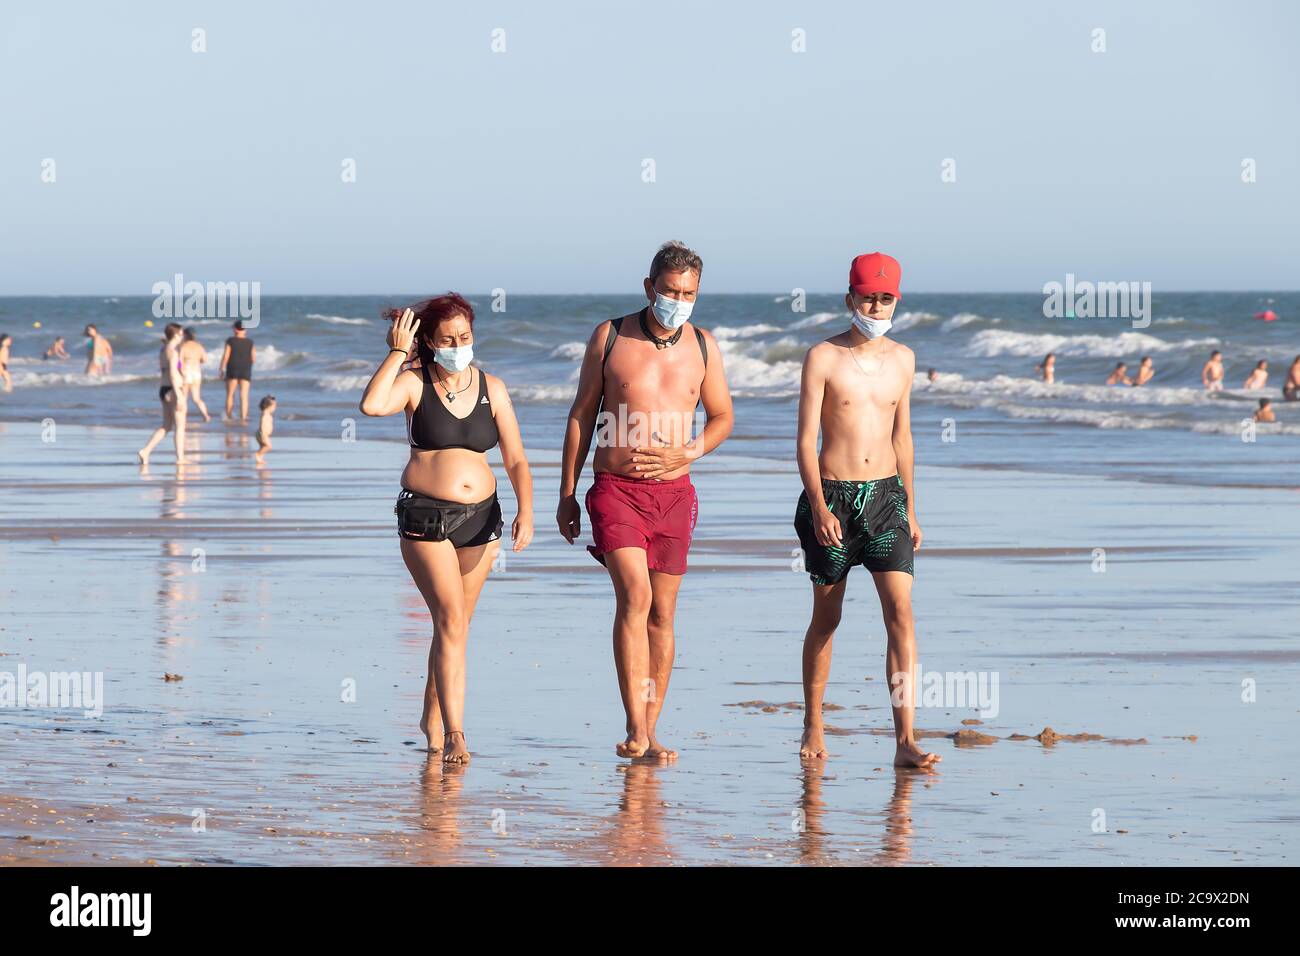 Punta Umbria, Huelva, Espagne - 2 août 2020: Personnes marchant sur la plage portant des masques protecteurs ou médicaux. Nouvelle normale en Espagne avec di social Banque D'Images